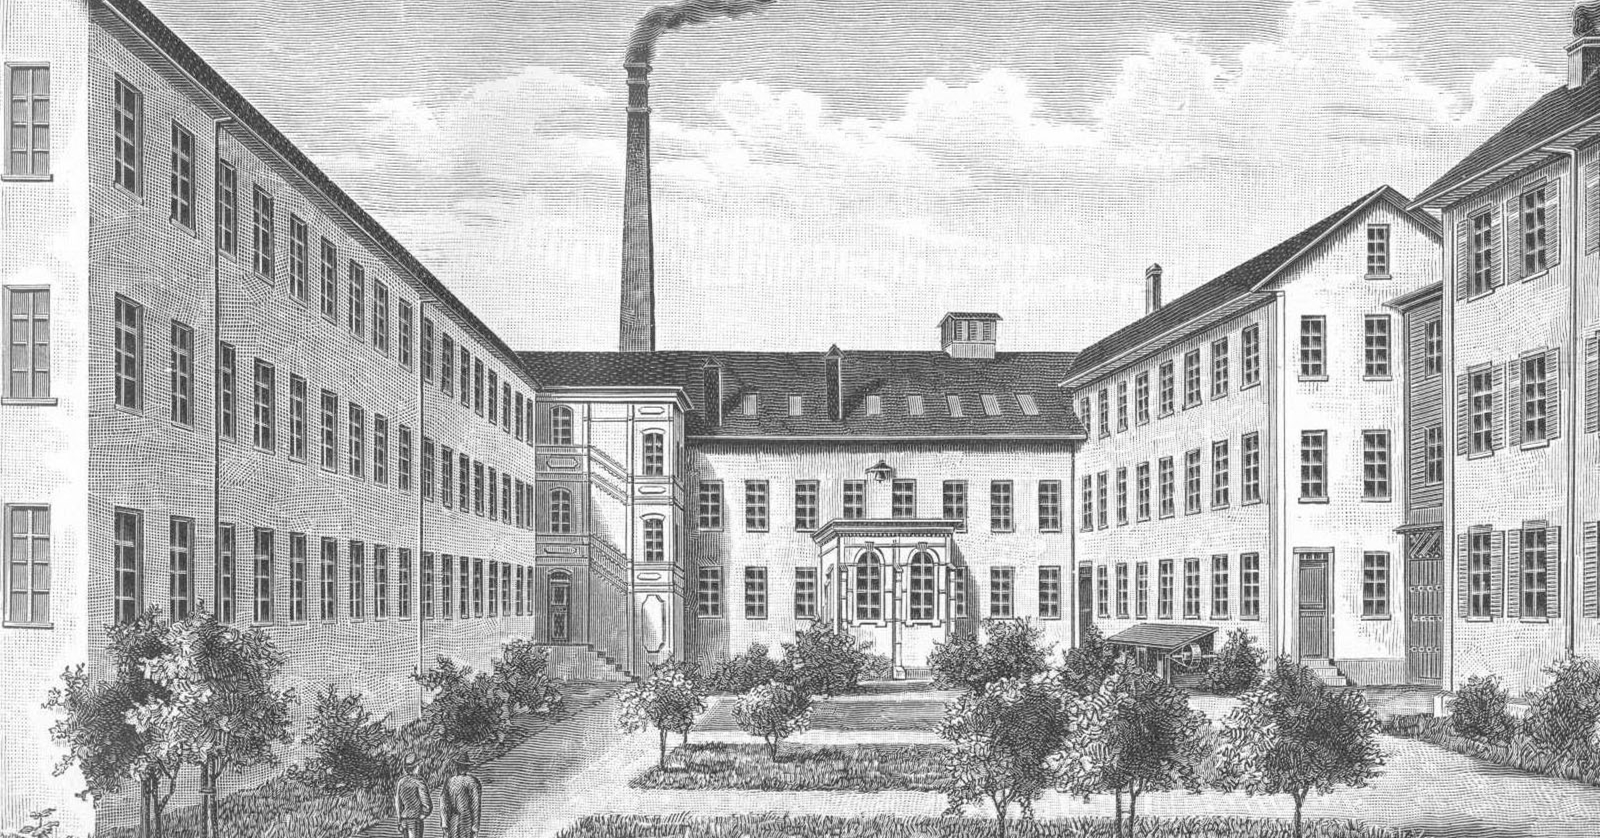 Papieri Biberist Fabrikhof 1865